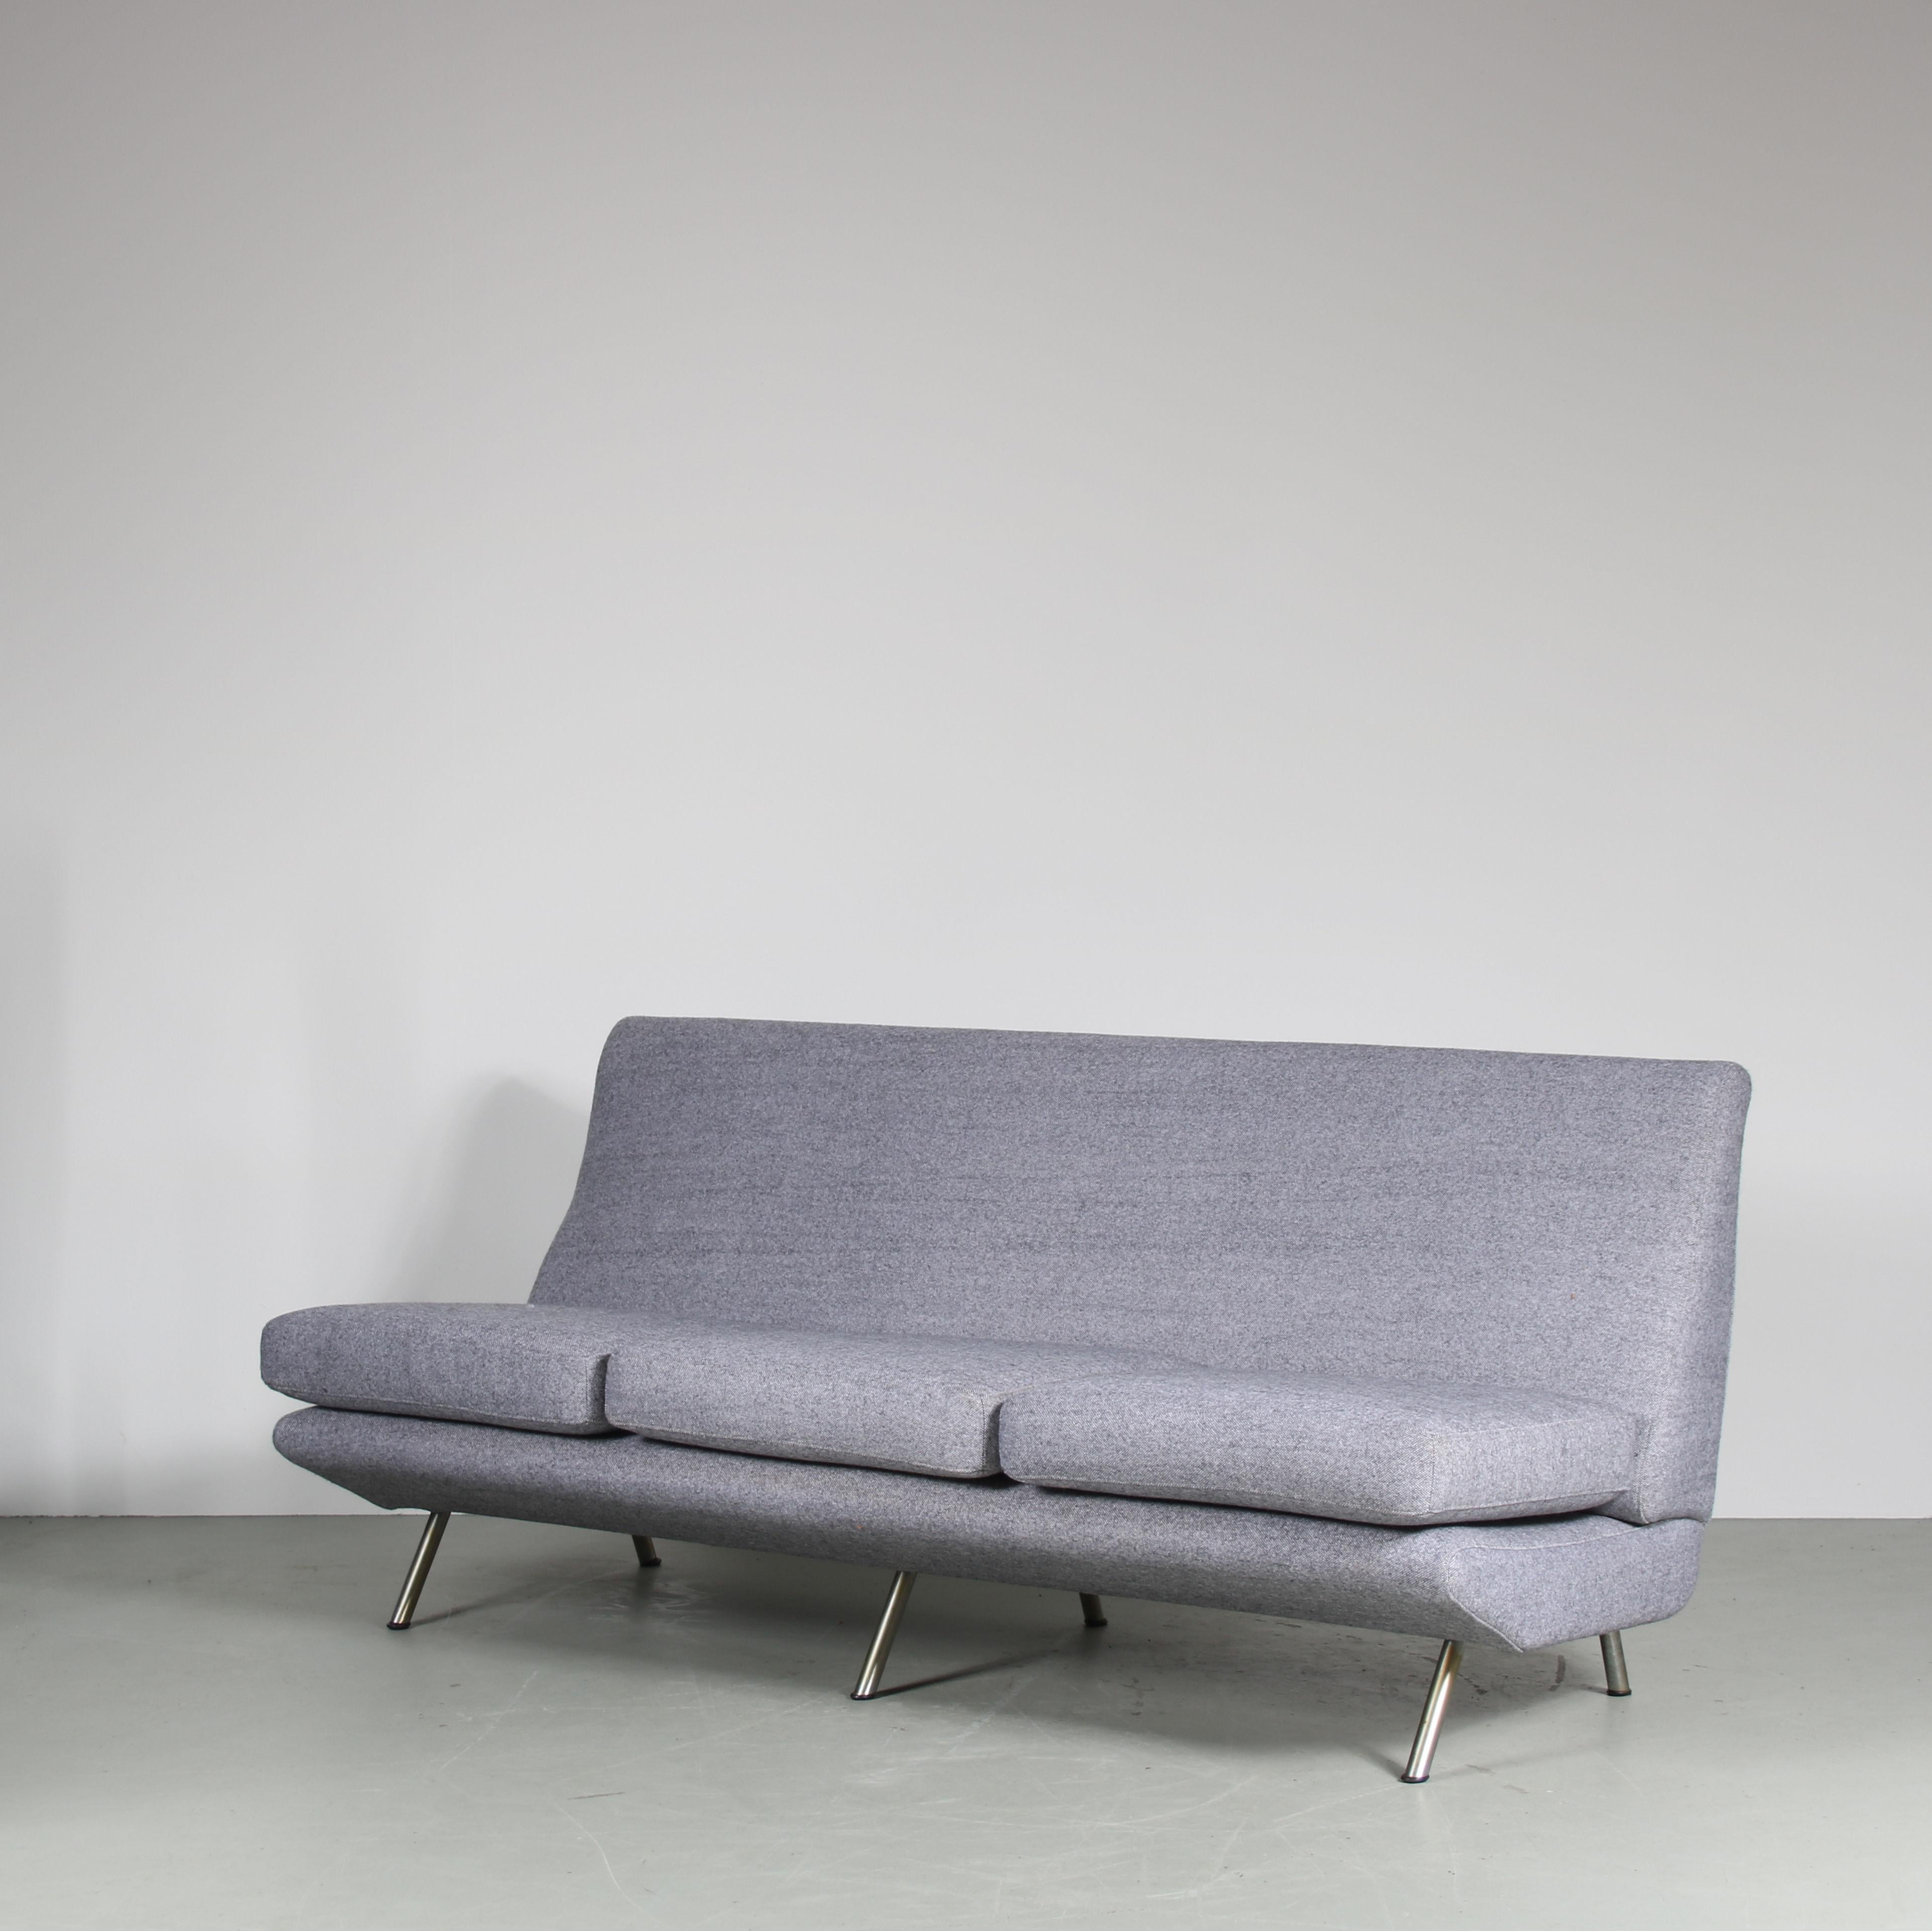 Un superbe canapé 3 places conçu par Marco Zanuso, fabriqué par Arflex en Italie vers 1950.

Ce canapé accrocheur est nouvellement recouvert de tissu gris. Les pieds en métal tubulaire inclinés vers l'extérieur ajoutent à son style élégant. Il est